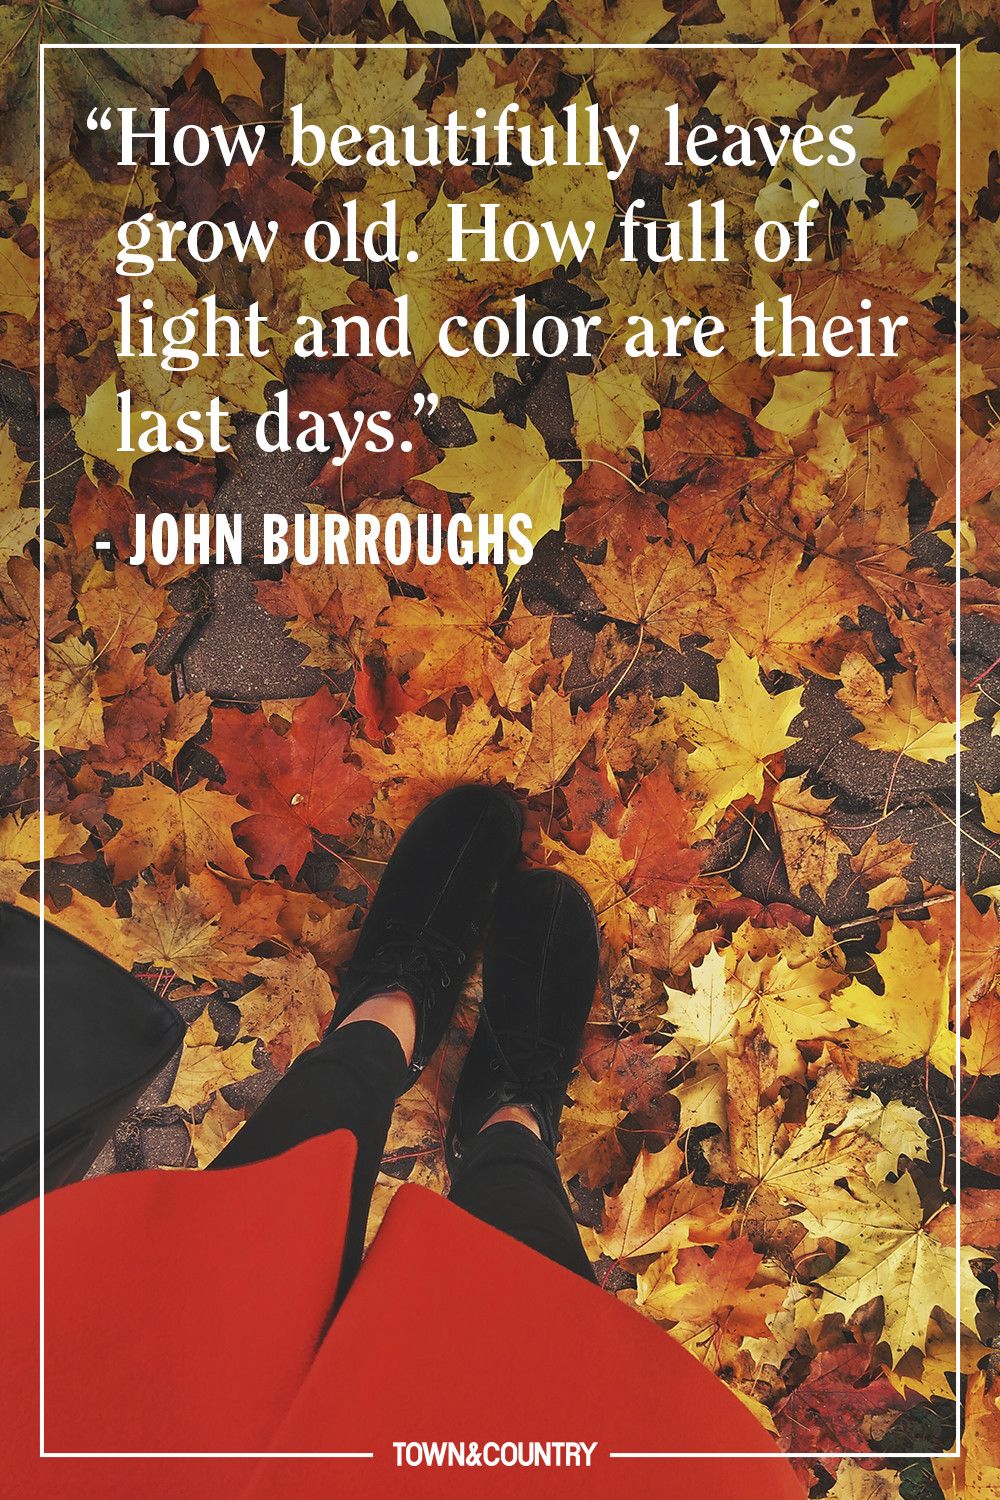 autumn love quotes